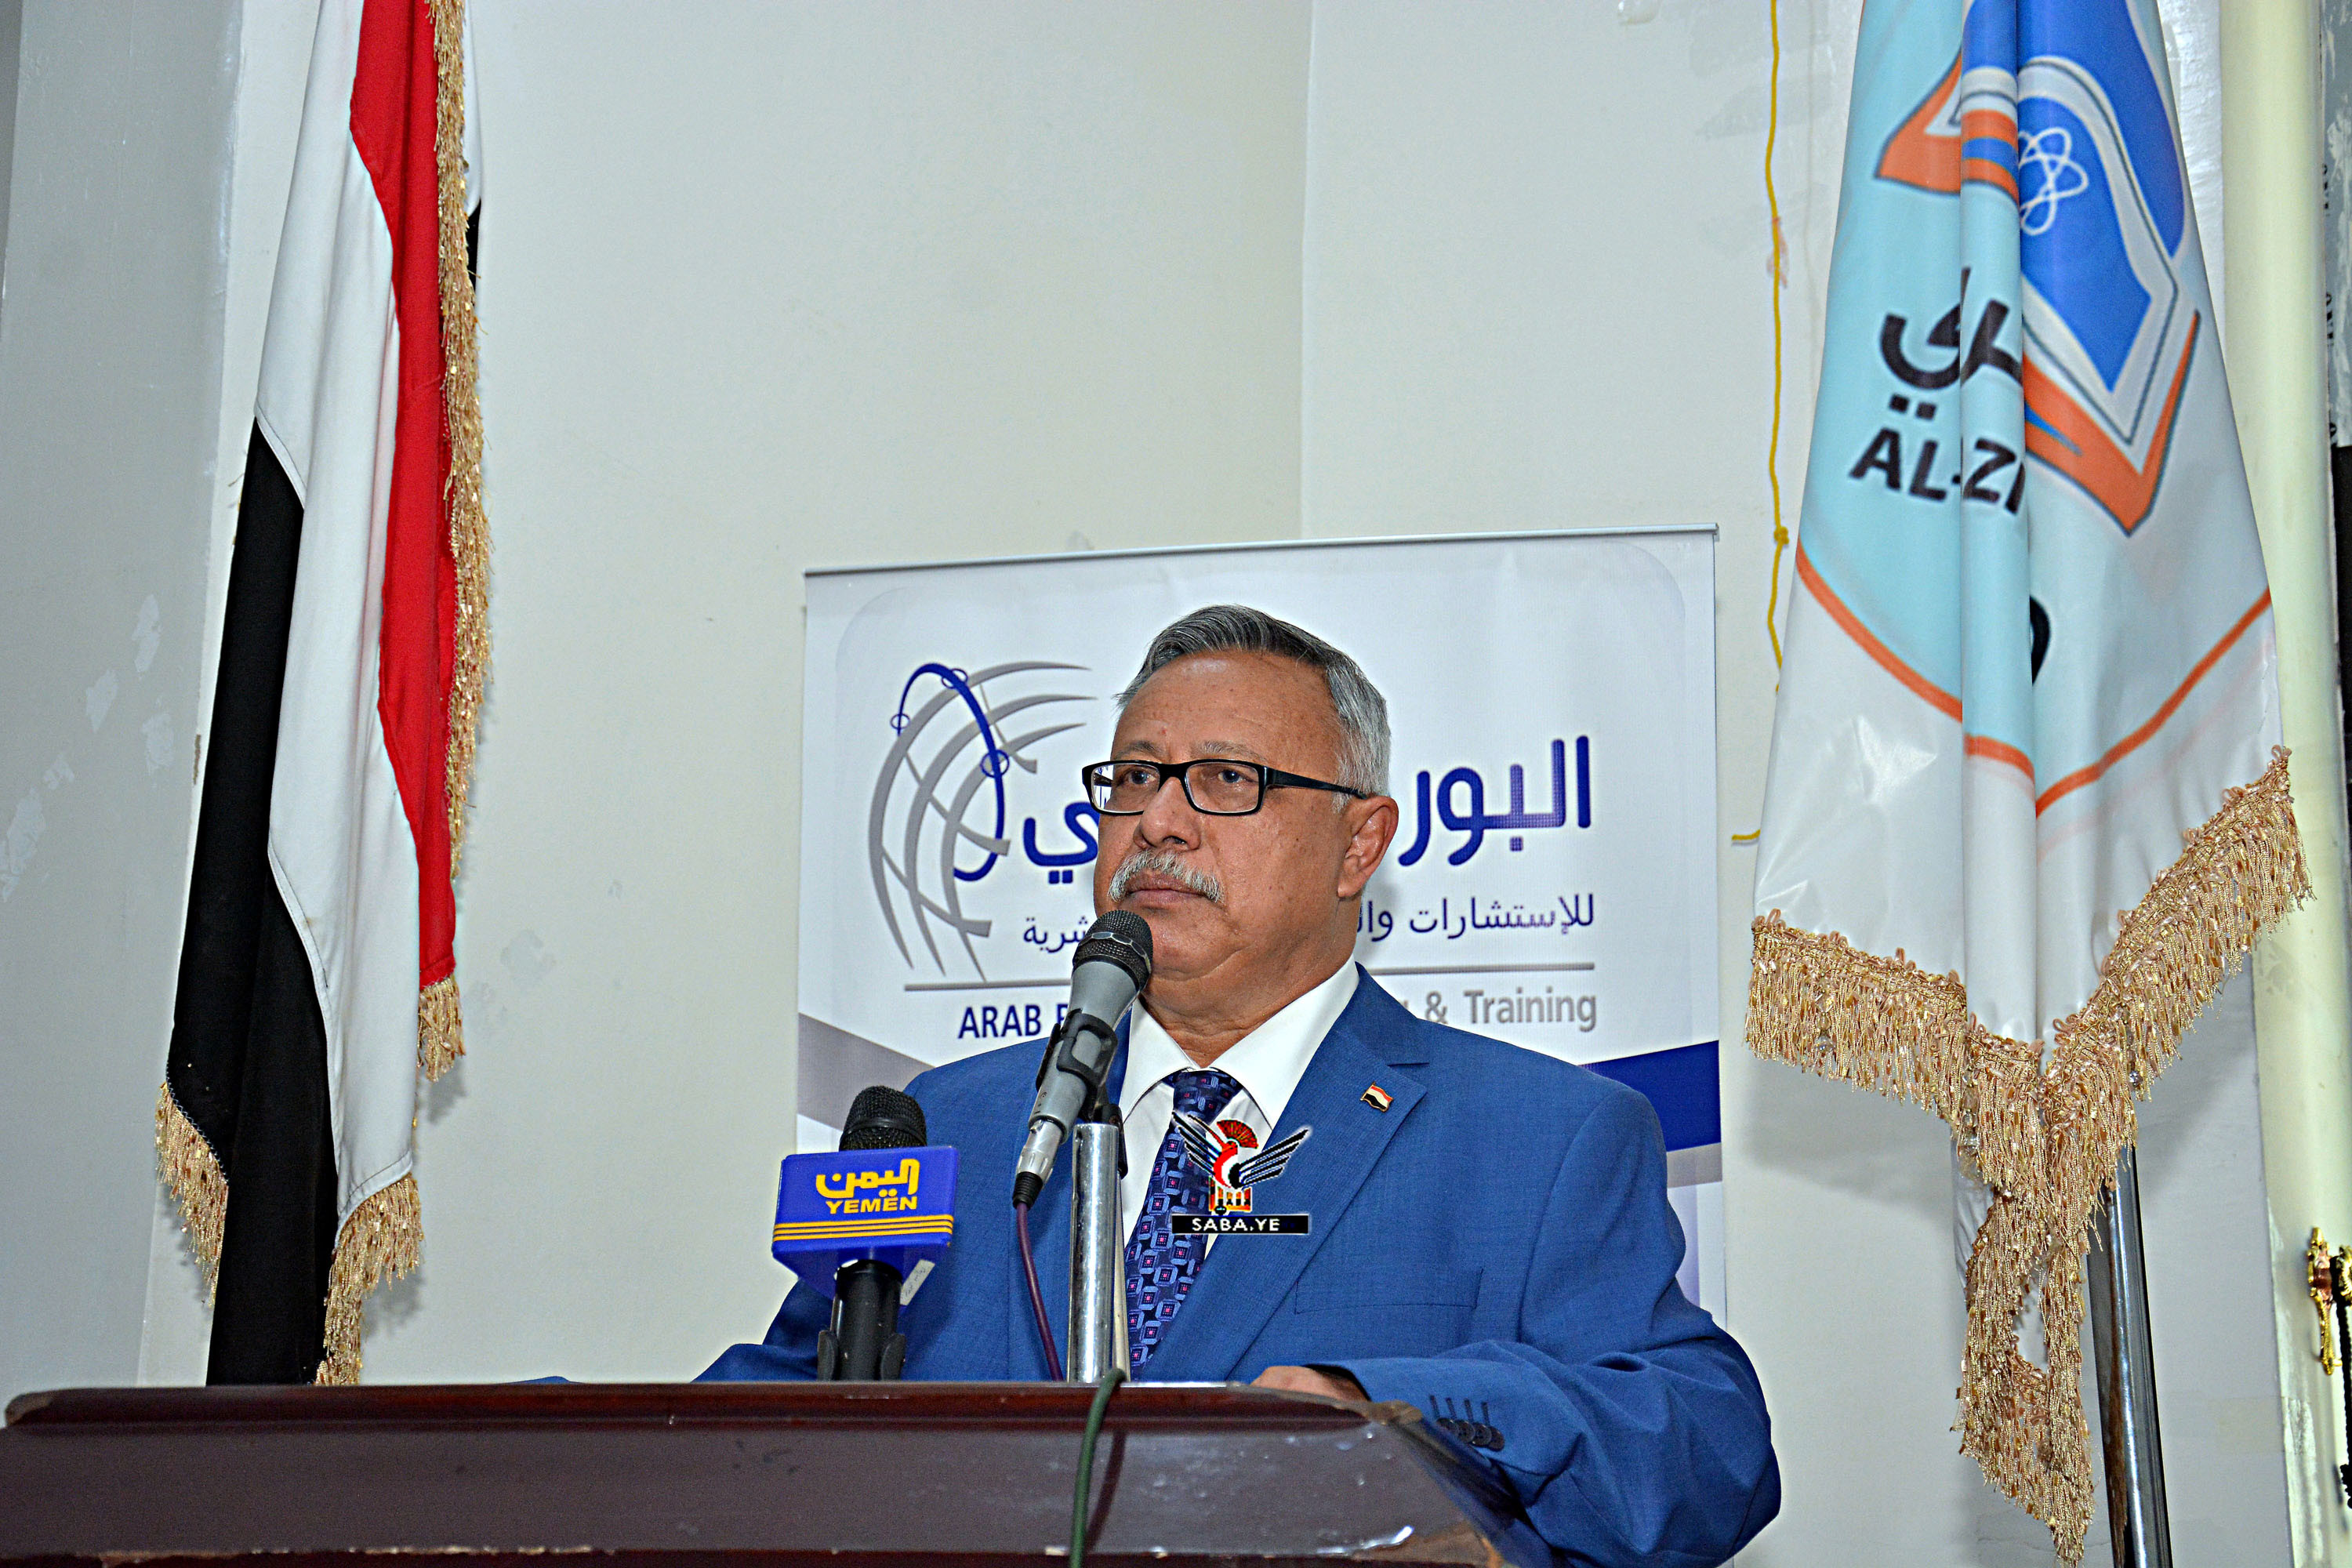 رئيس الوزراء يشارك في مؤتمر البورد العربي حول الرؤية المستقبلية للتعليم والتدريب في اليمن